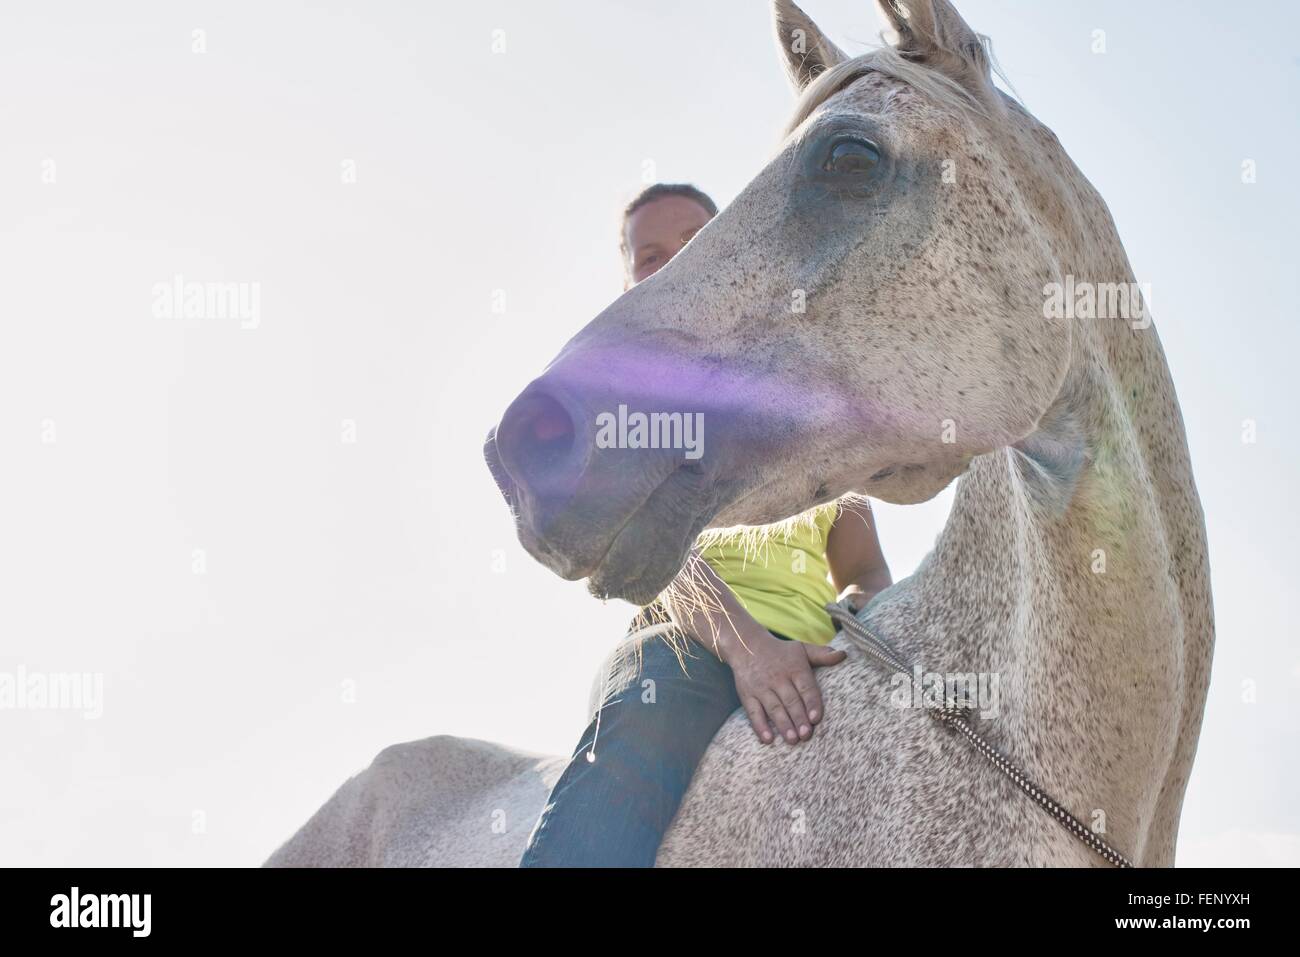 Basso angolo di visione della donna di equitazione cavallo grigio bareback Foto Stock